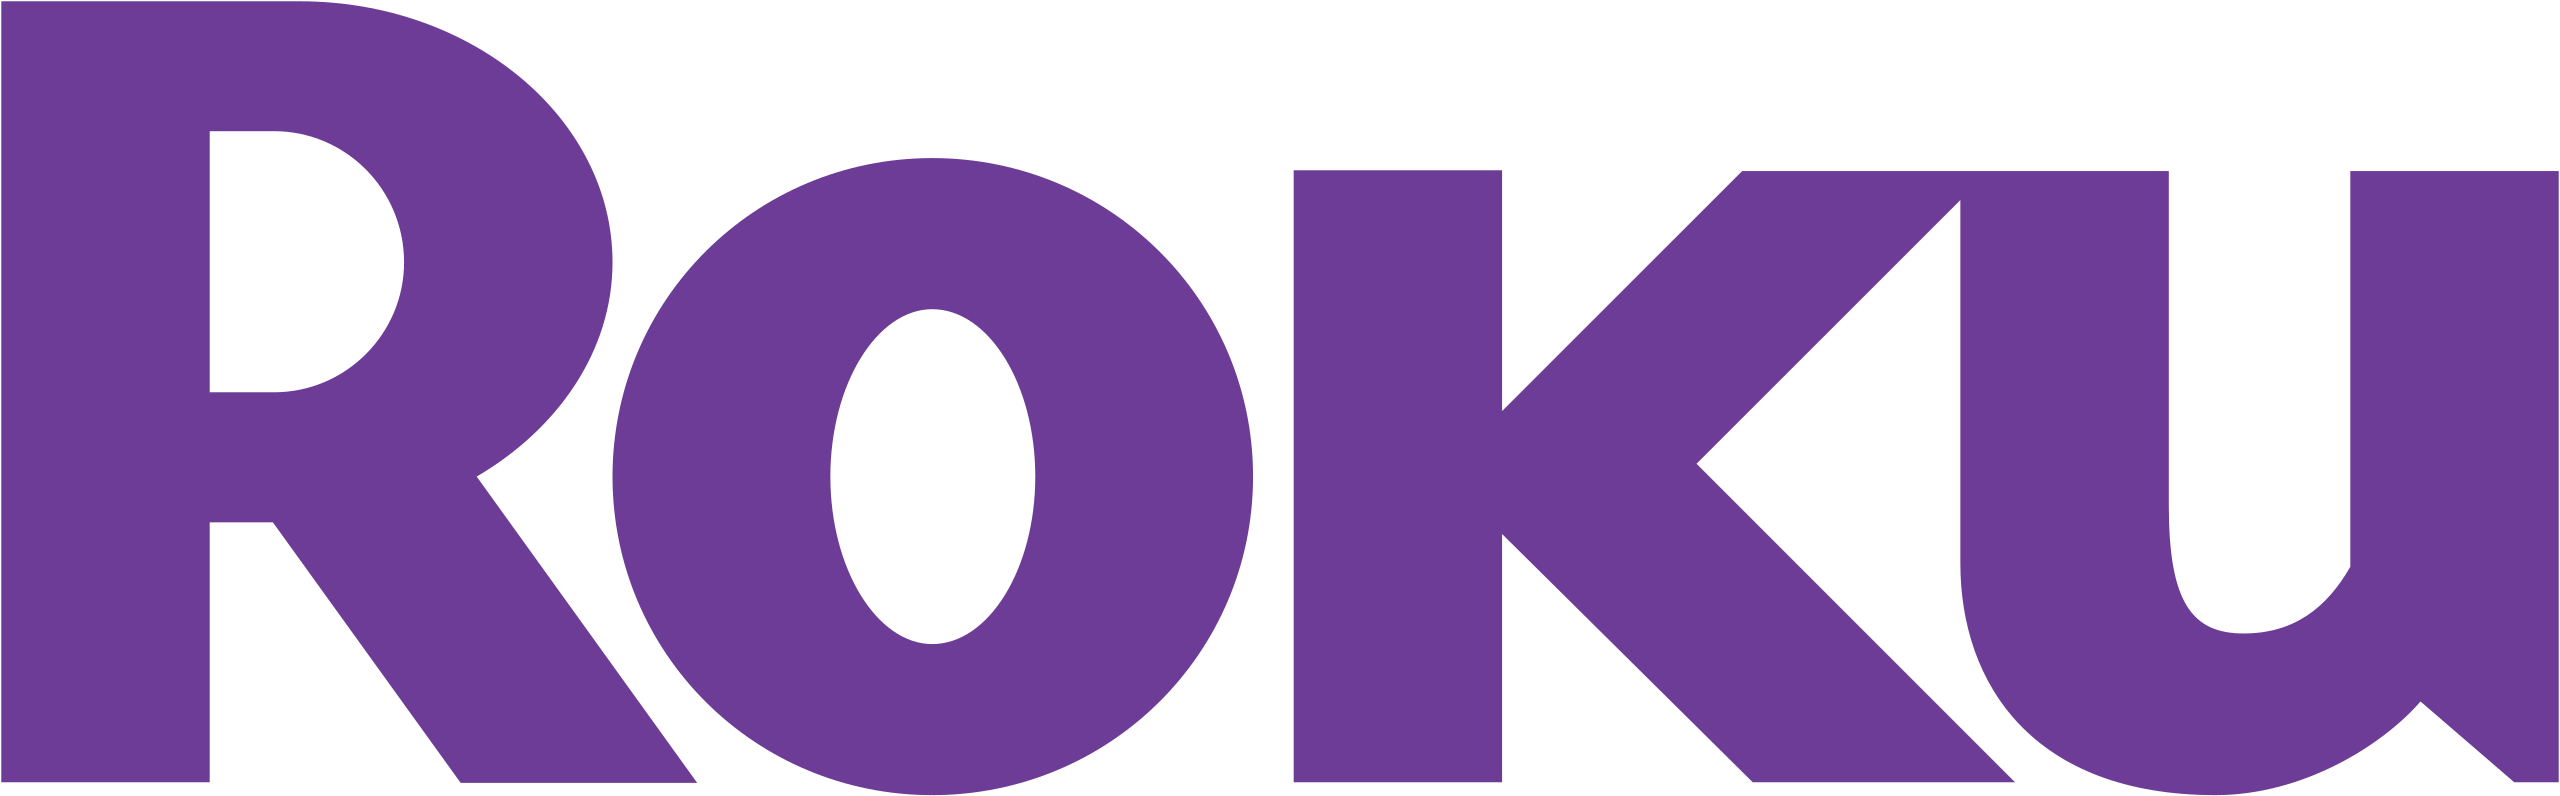 udslæt på kapillærer File:Roku logo.svg - Wikipedia